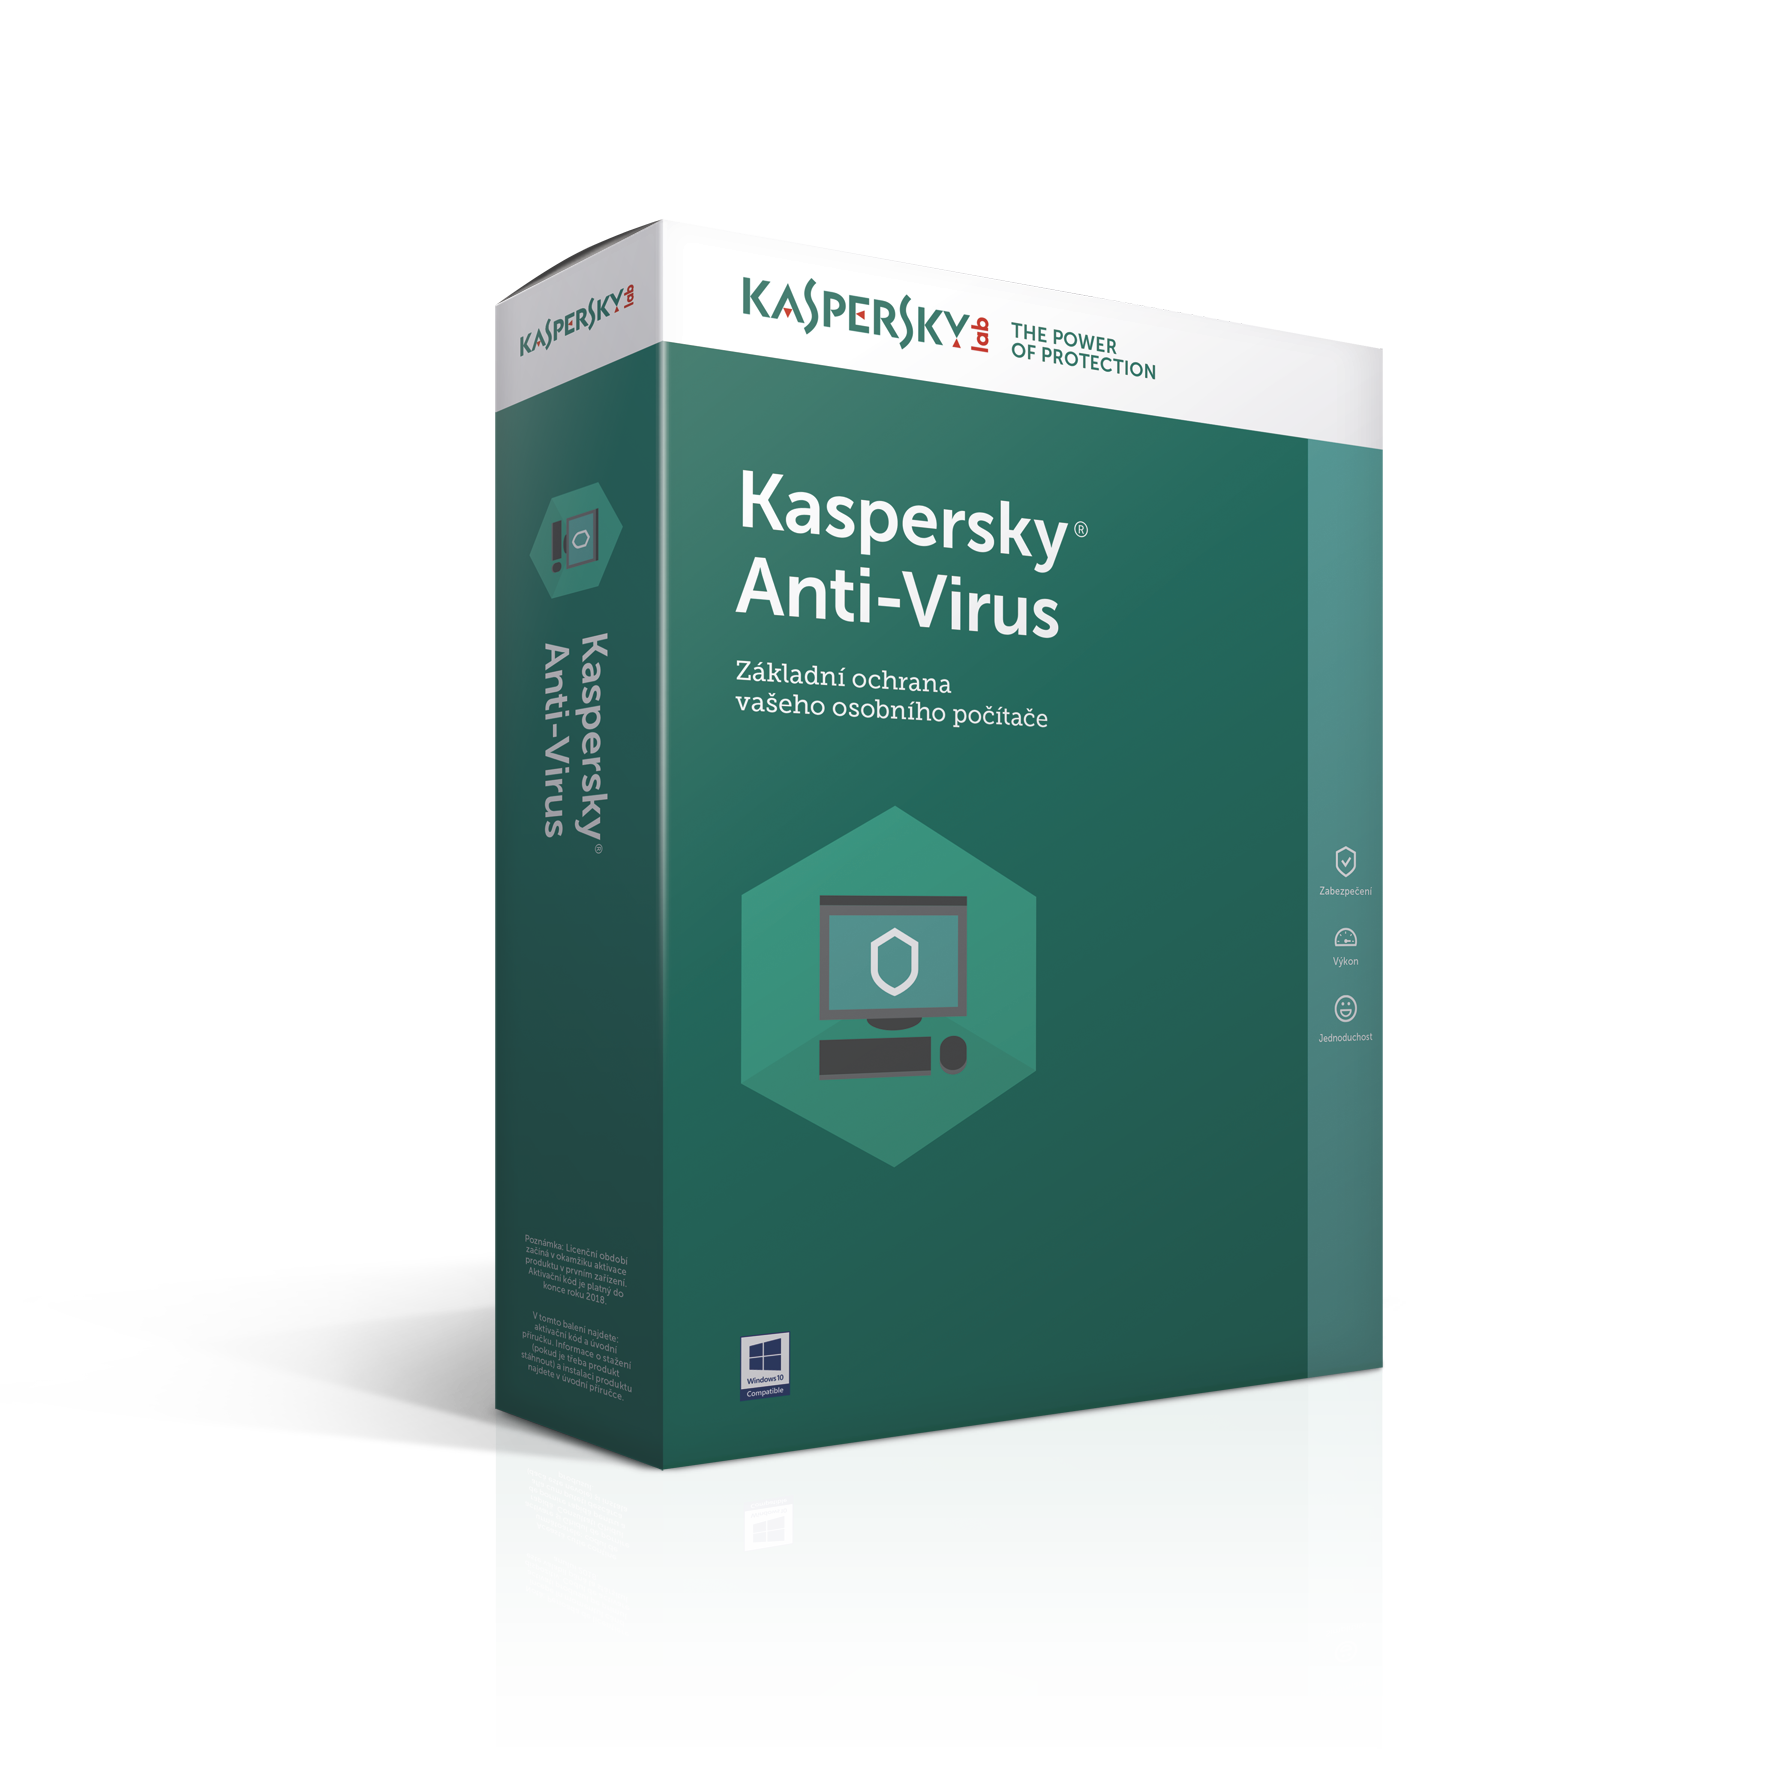 Kaspersky Anti-Virus 2016 CZ, 2PC, 1 rok, nová licence, box KL1167OBBFS-MCZ